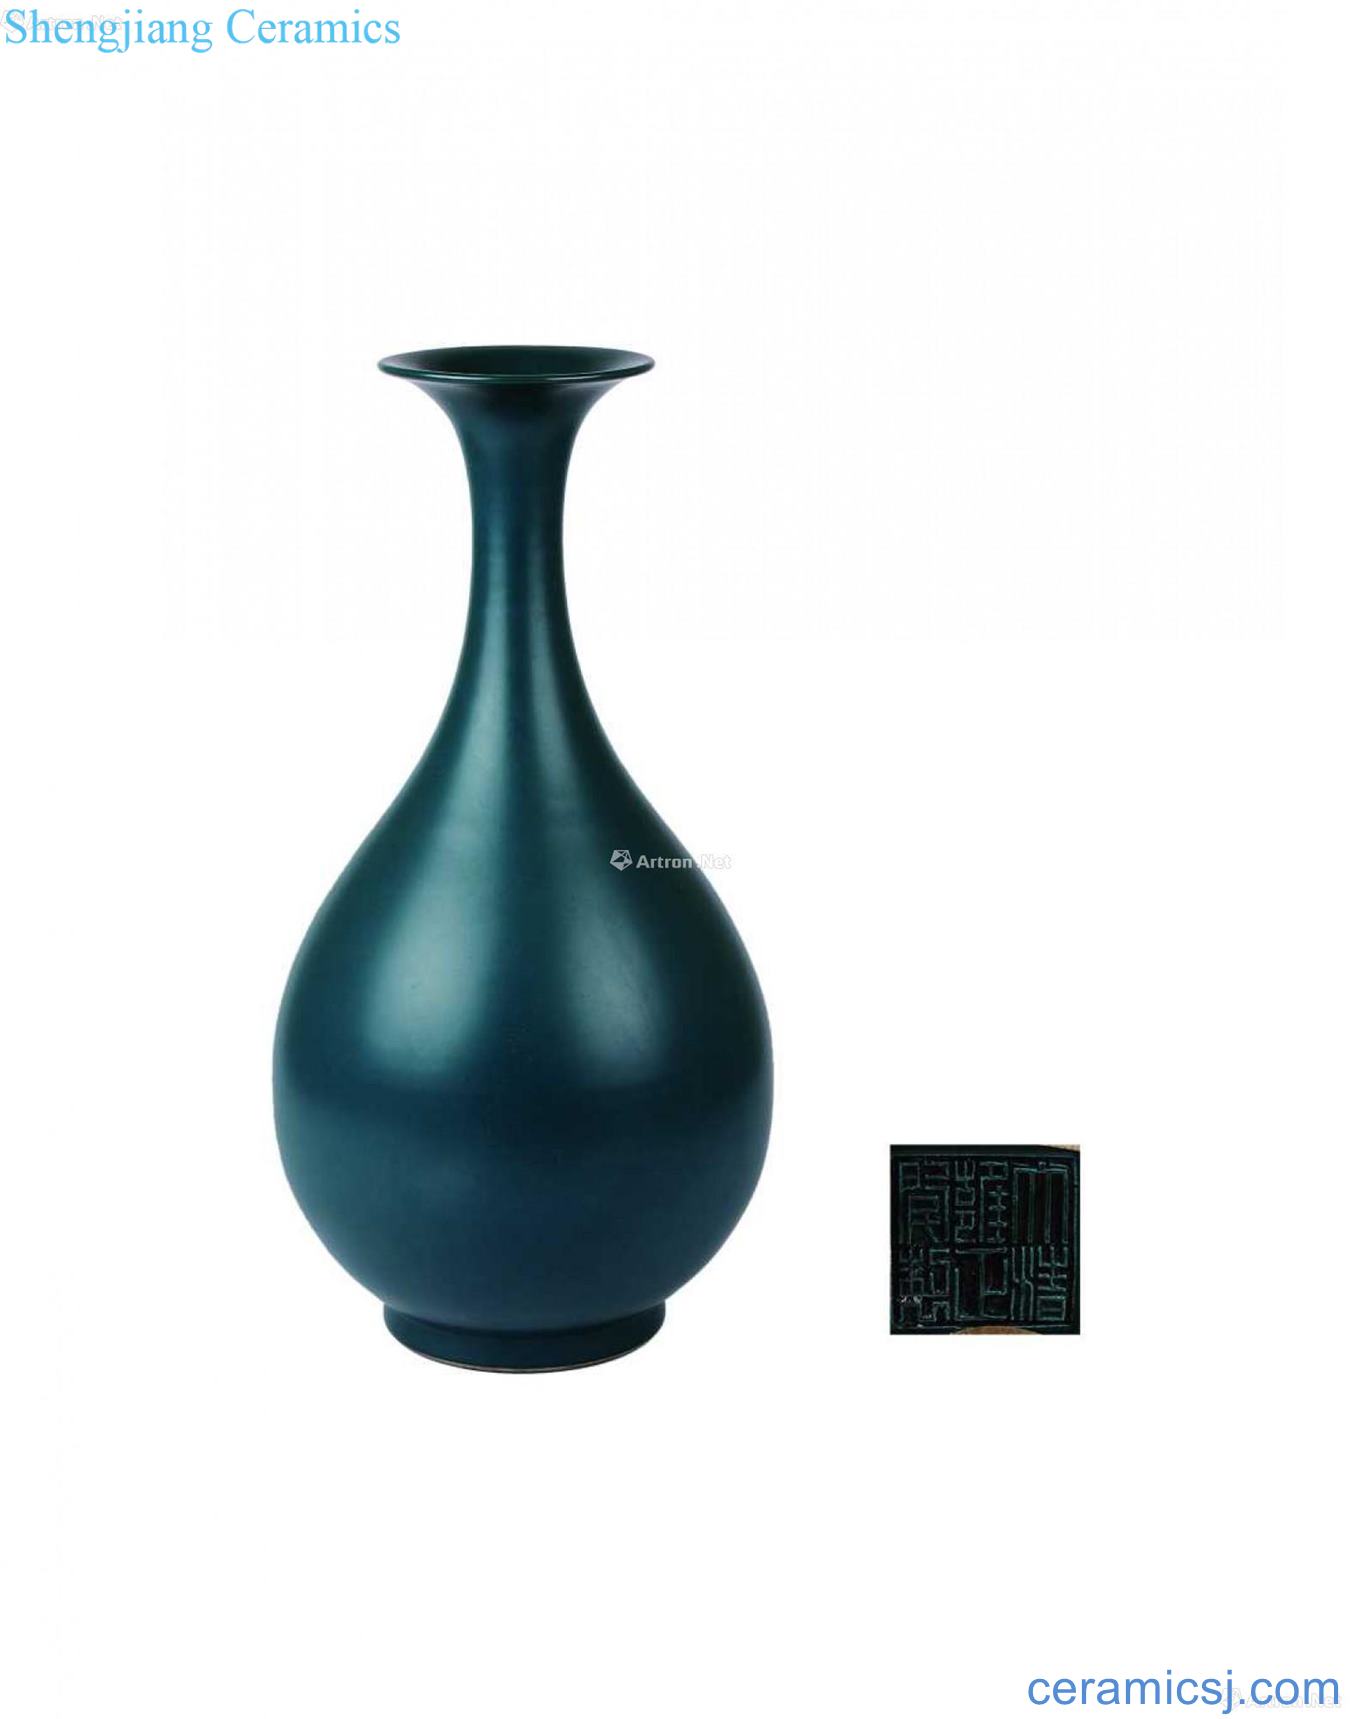 The peacock blue glaze okho spring bottle